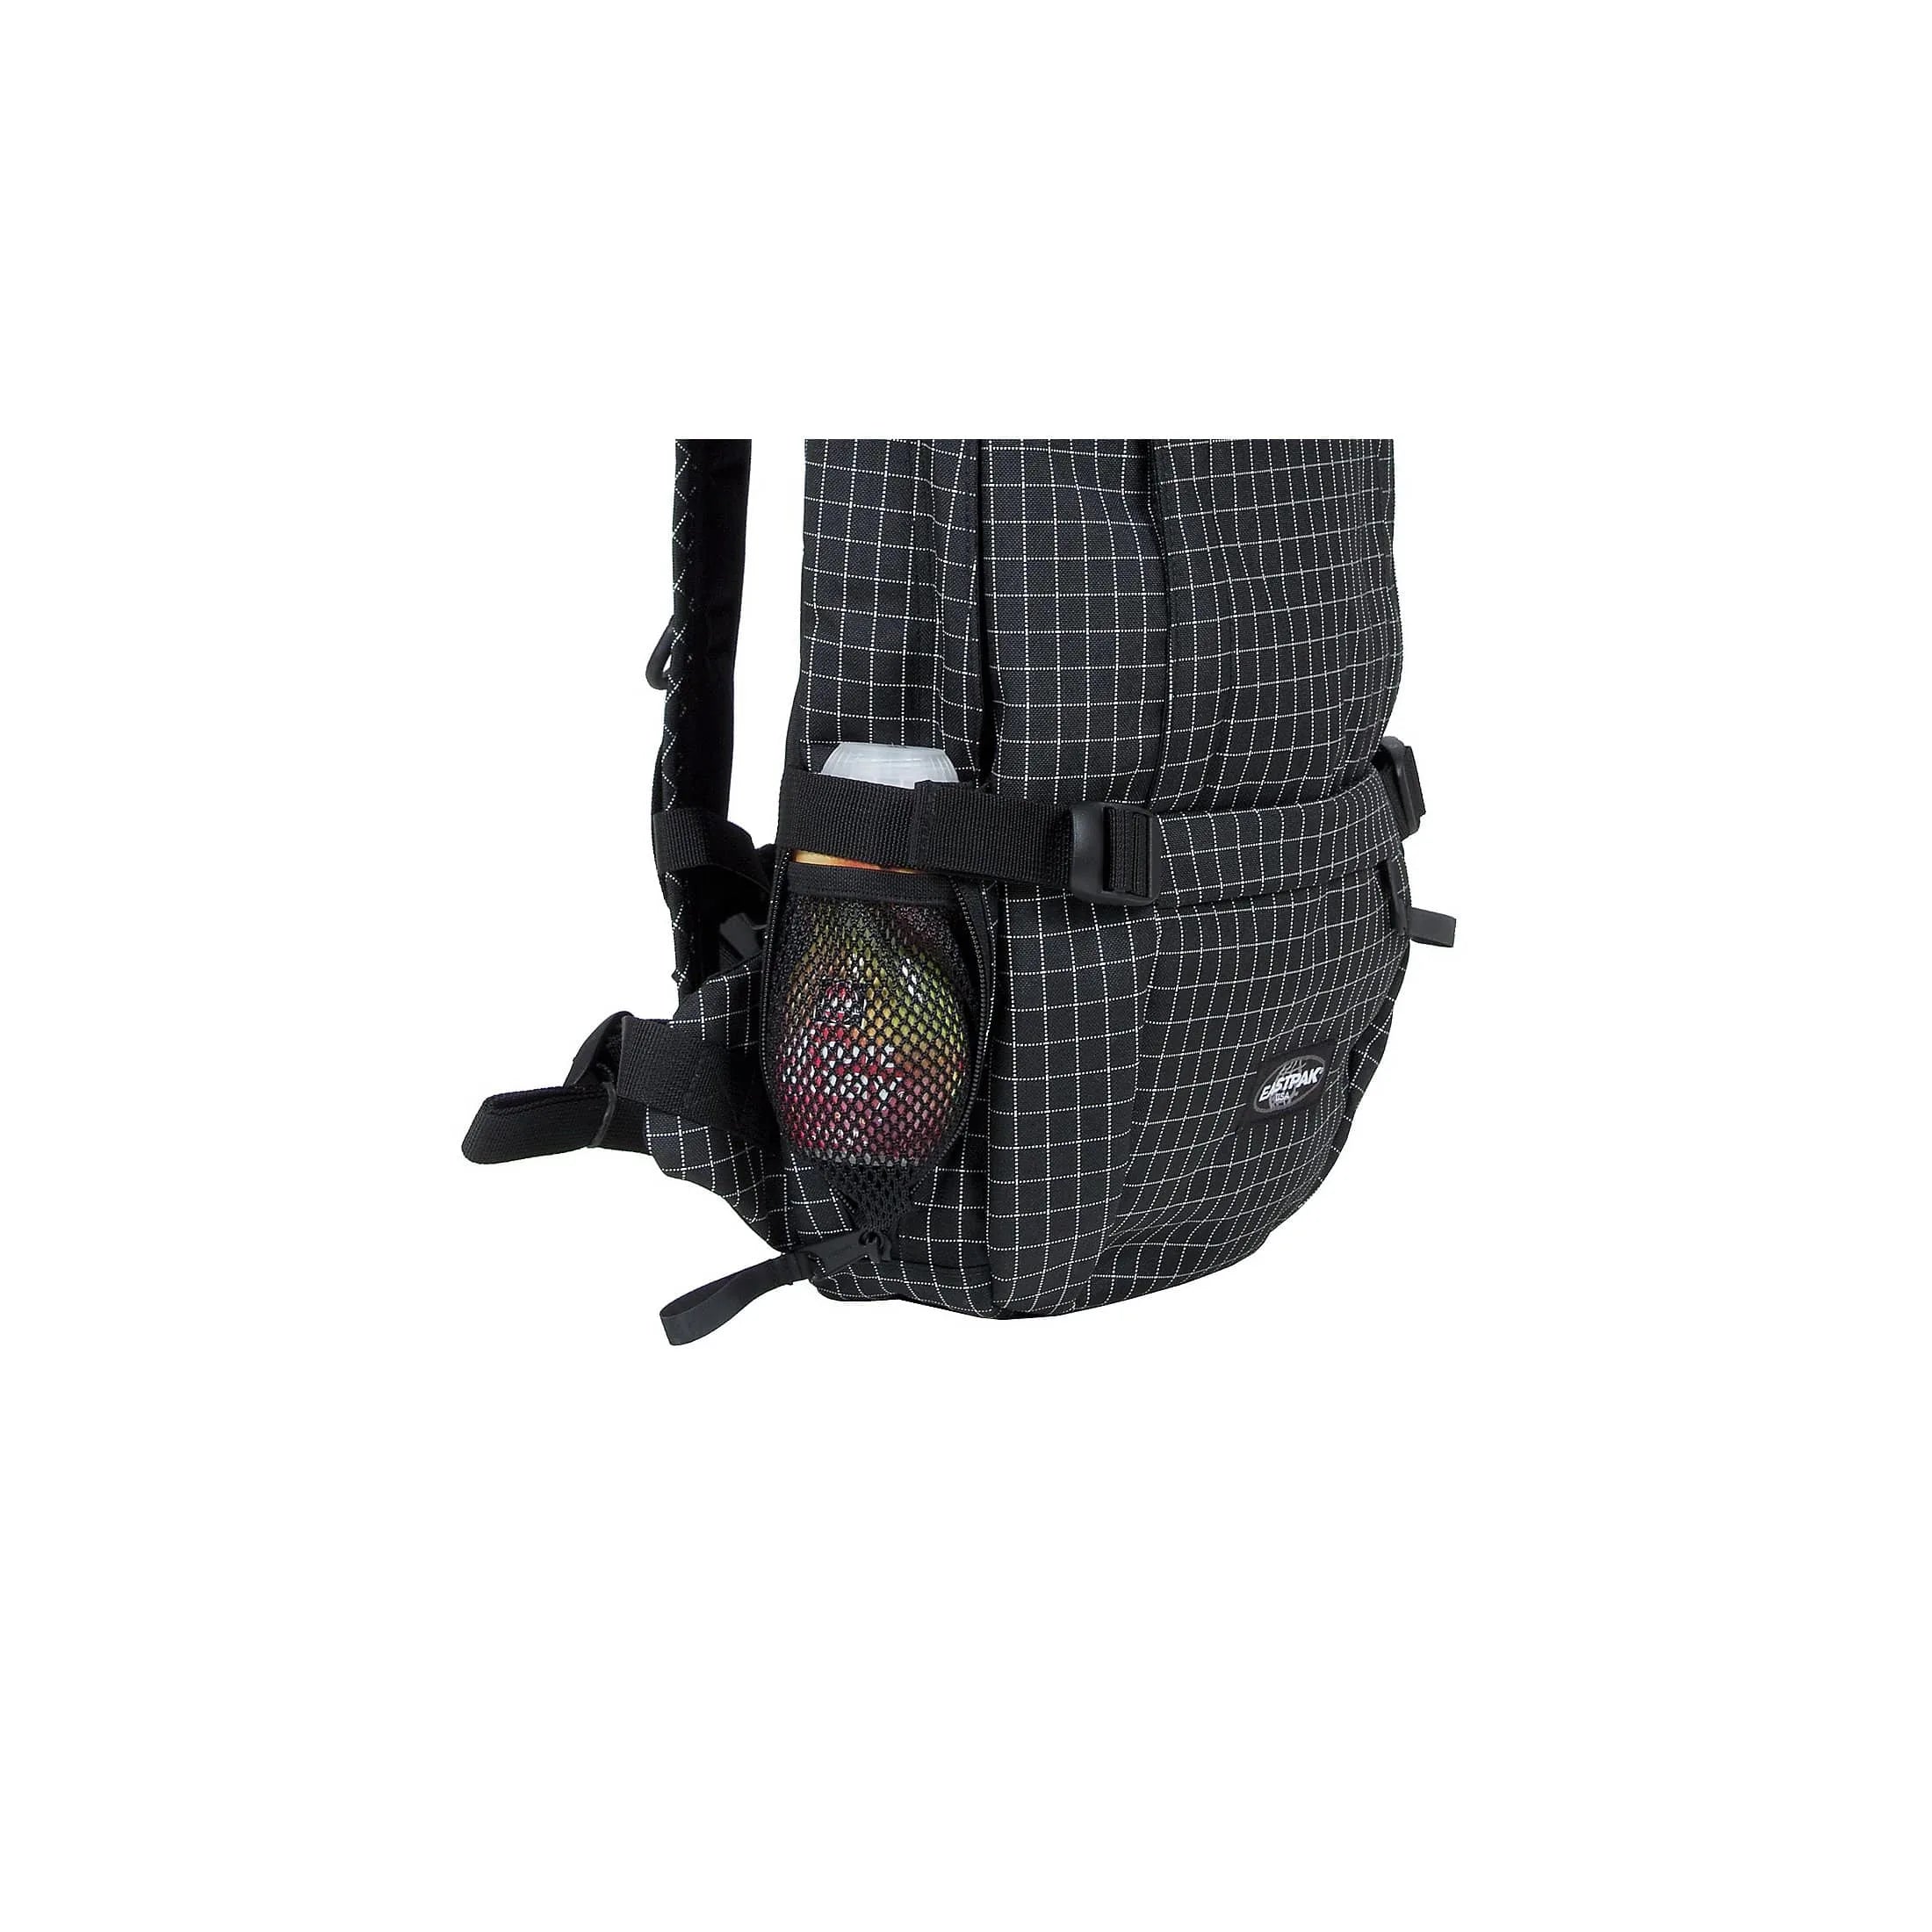 Eastpak Core Series Floid backpack with laptop compartment 50 cm - Cs Triple Denim